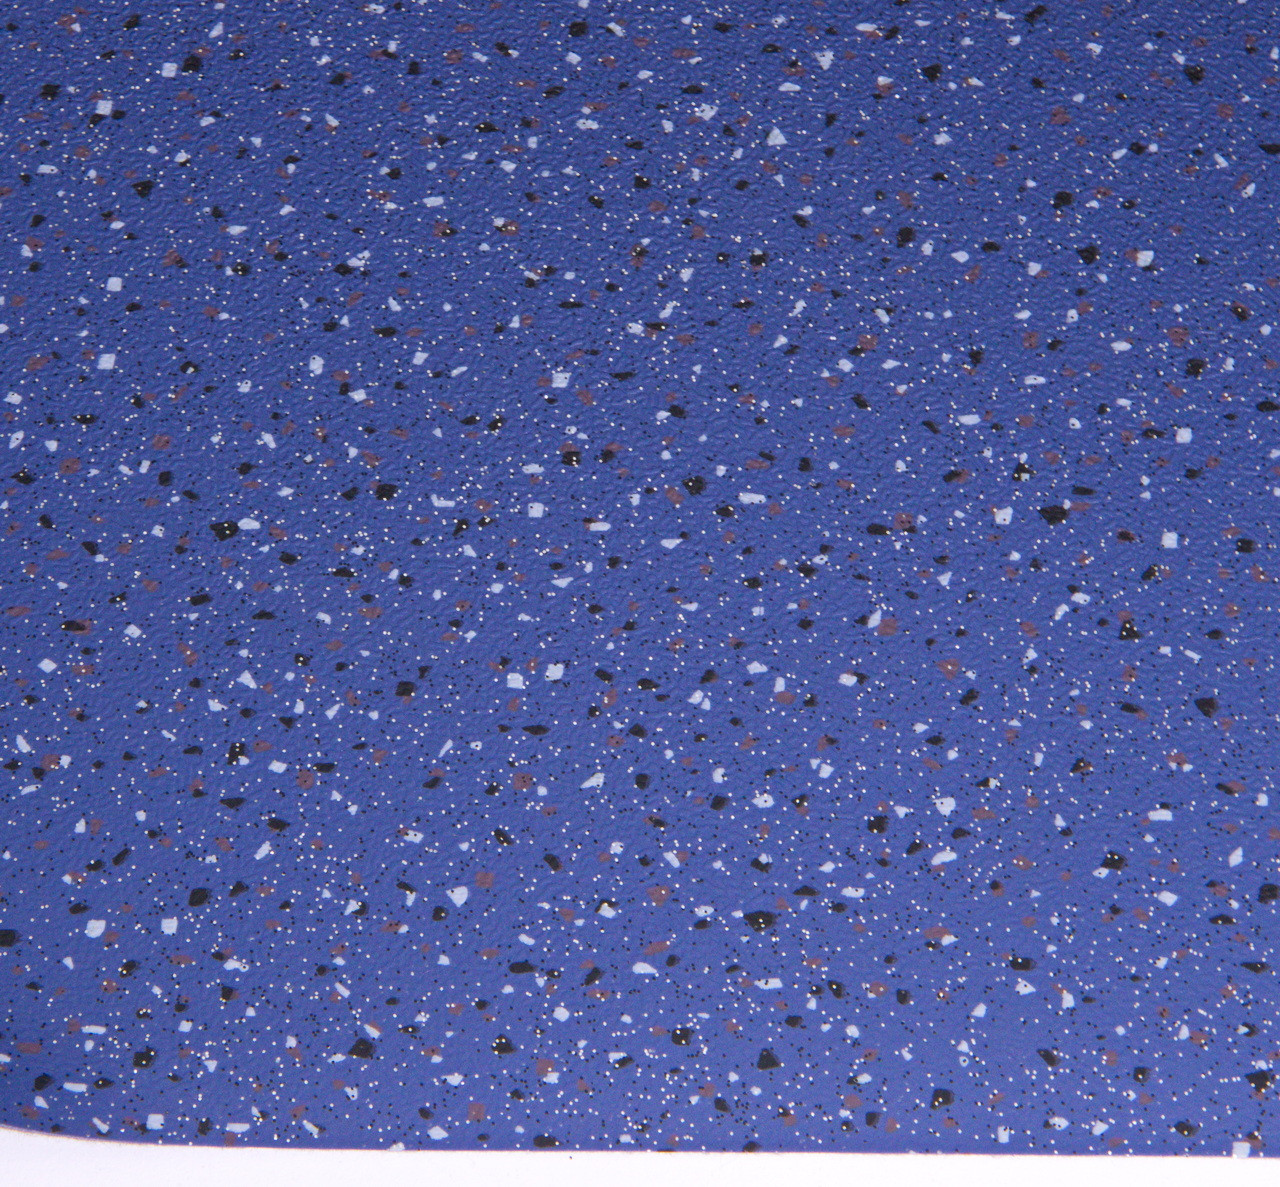 Автолинолеум синий "Мозаика" (Levent), ширина 2.0 м, линолеум автомобильный, Турция детальная фотка